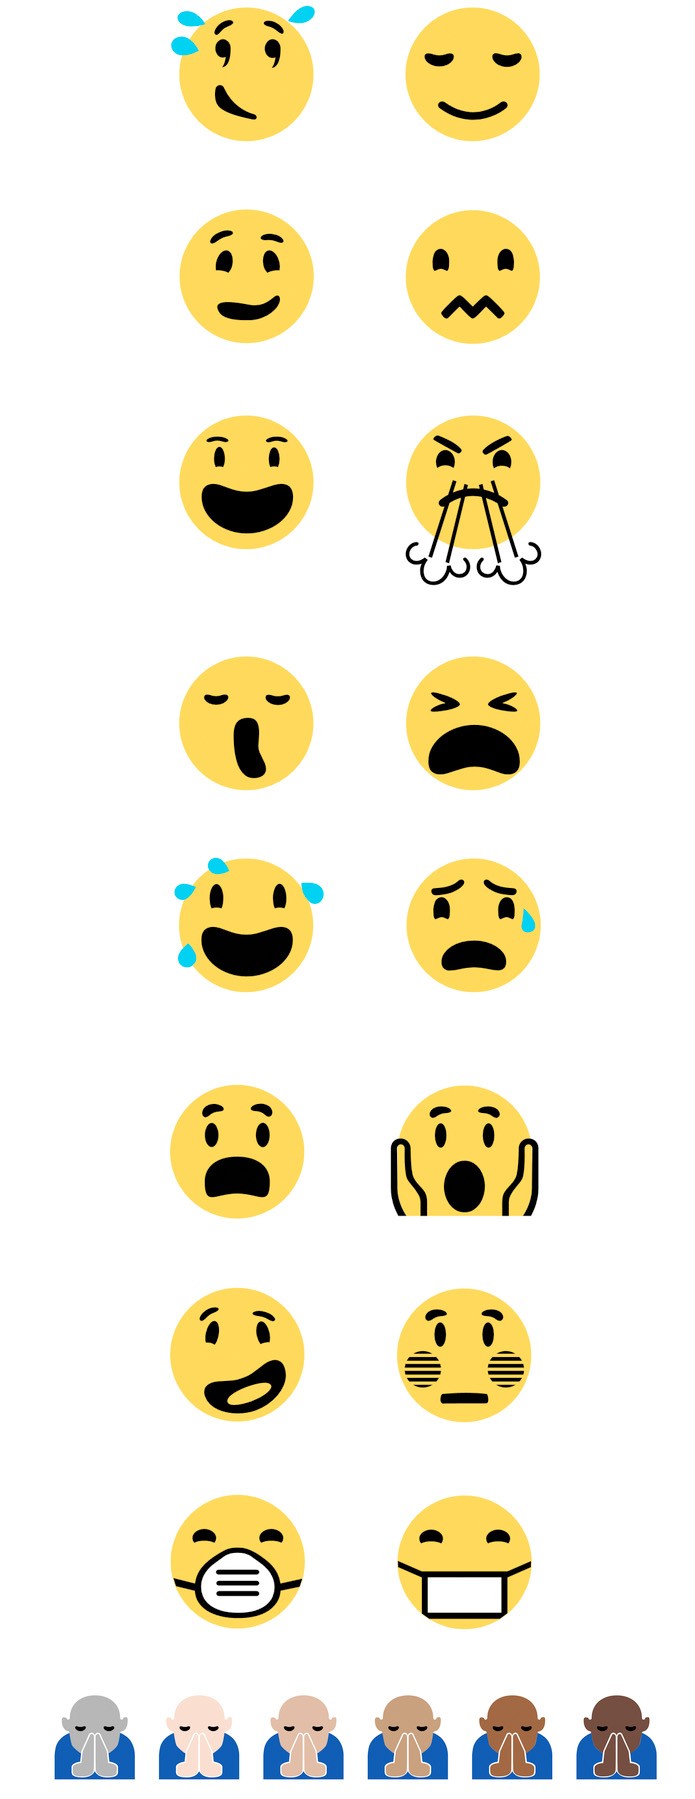 Os novos emojis do Windows 10; mais divertidos e até mal educados (Foto: Divulgação/Emojipedia)